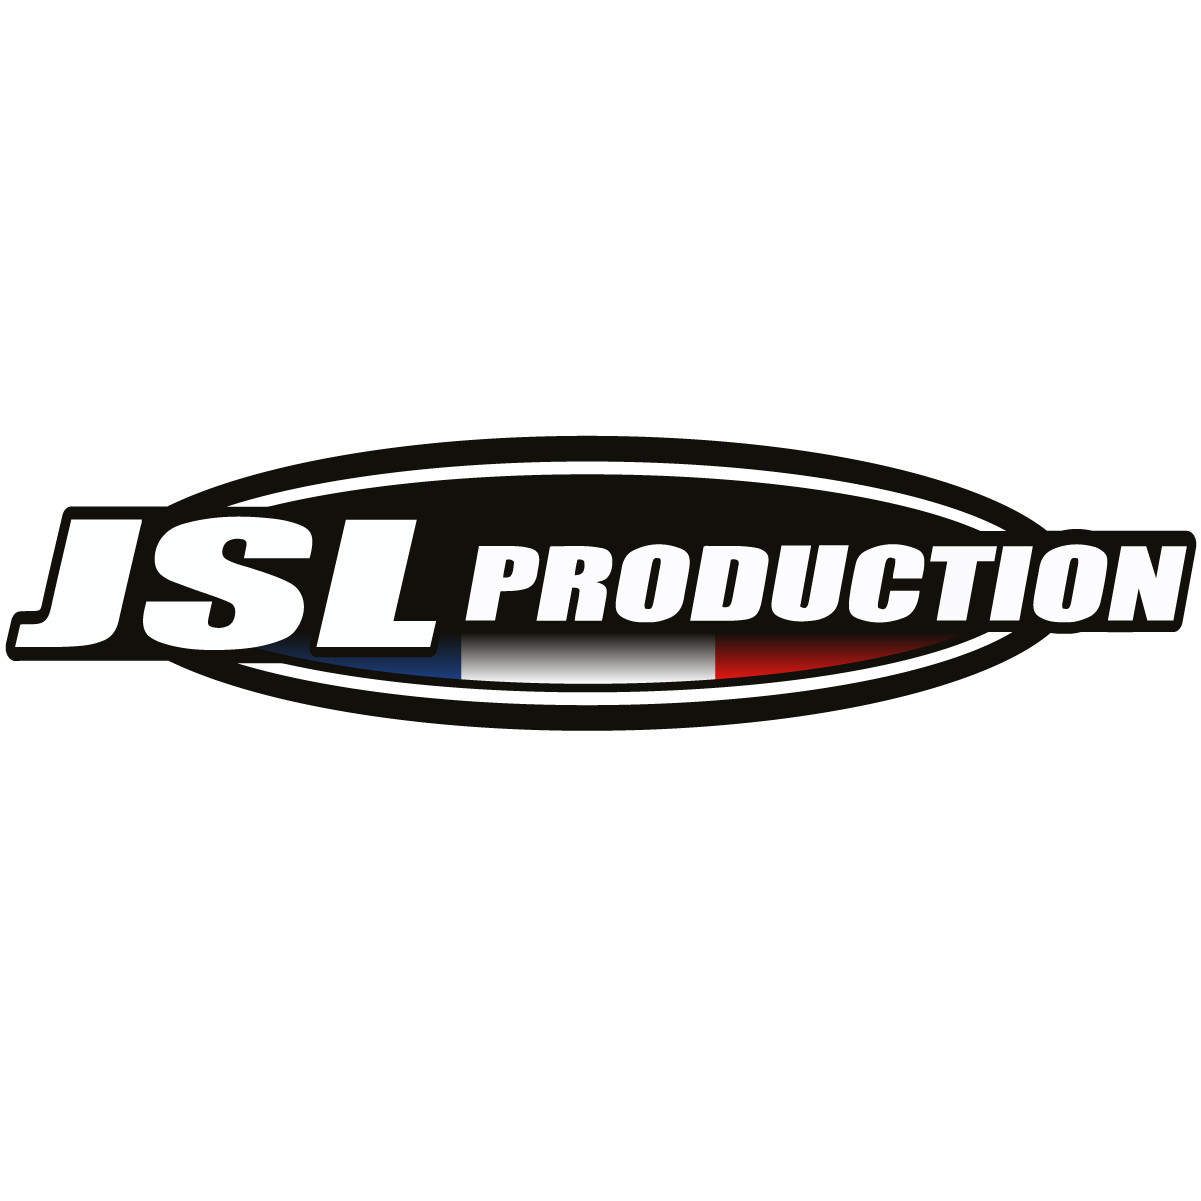 JSL PRODUCTION